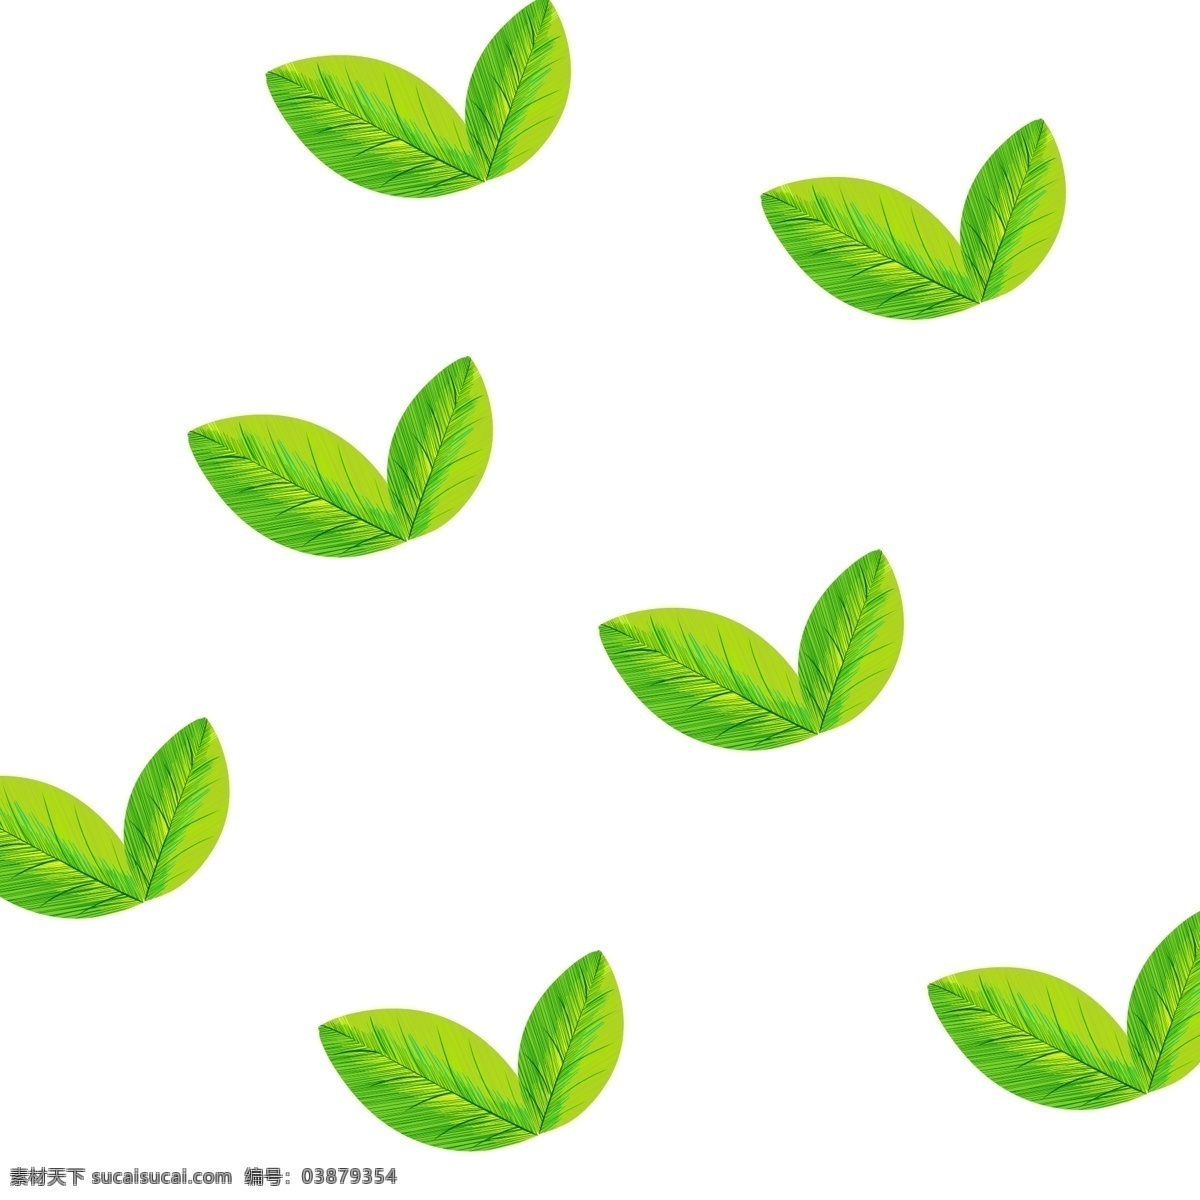 绿色植物 叶子 手绘 茶叶 透明 底 免 抠 绿色 植物 叶片 卫矛叶子 女贞叶子 小清新 水彩风 透明底 免抠 生机勃勃 春暖花开